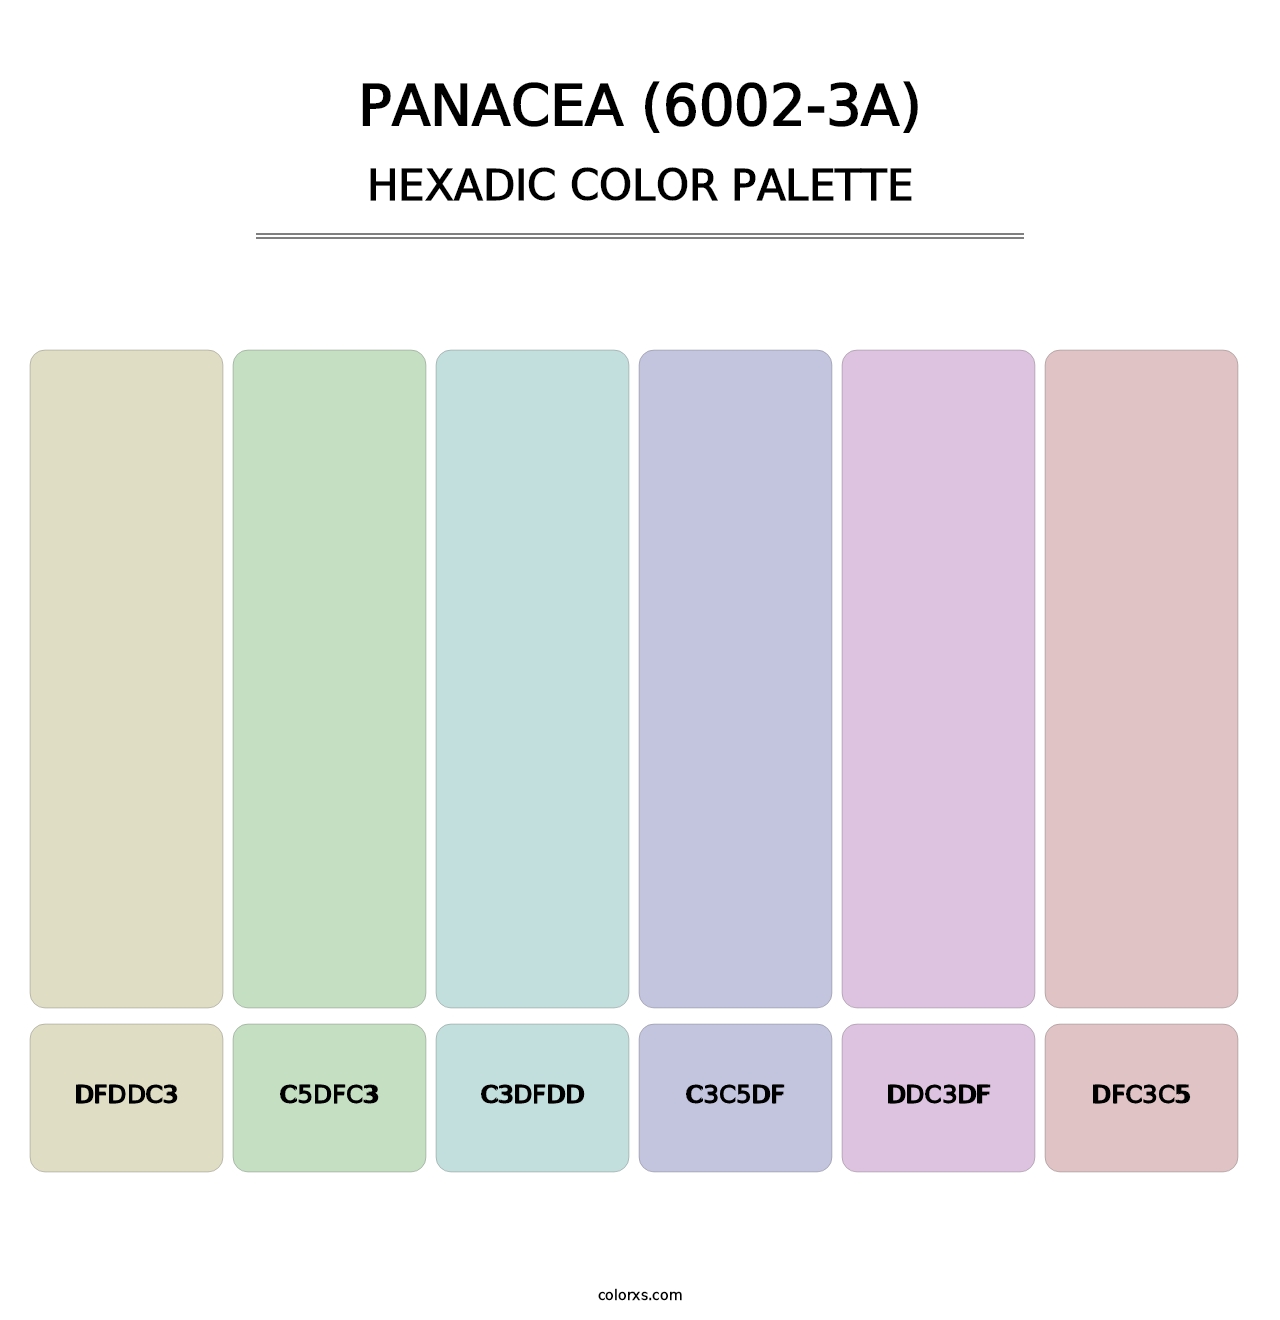 Panacea (6002-3A) - Hexadic Color Palette